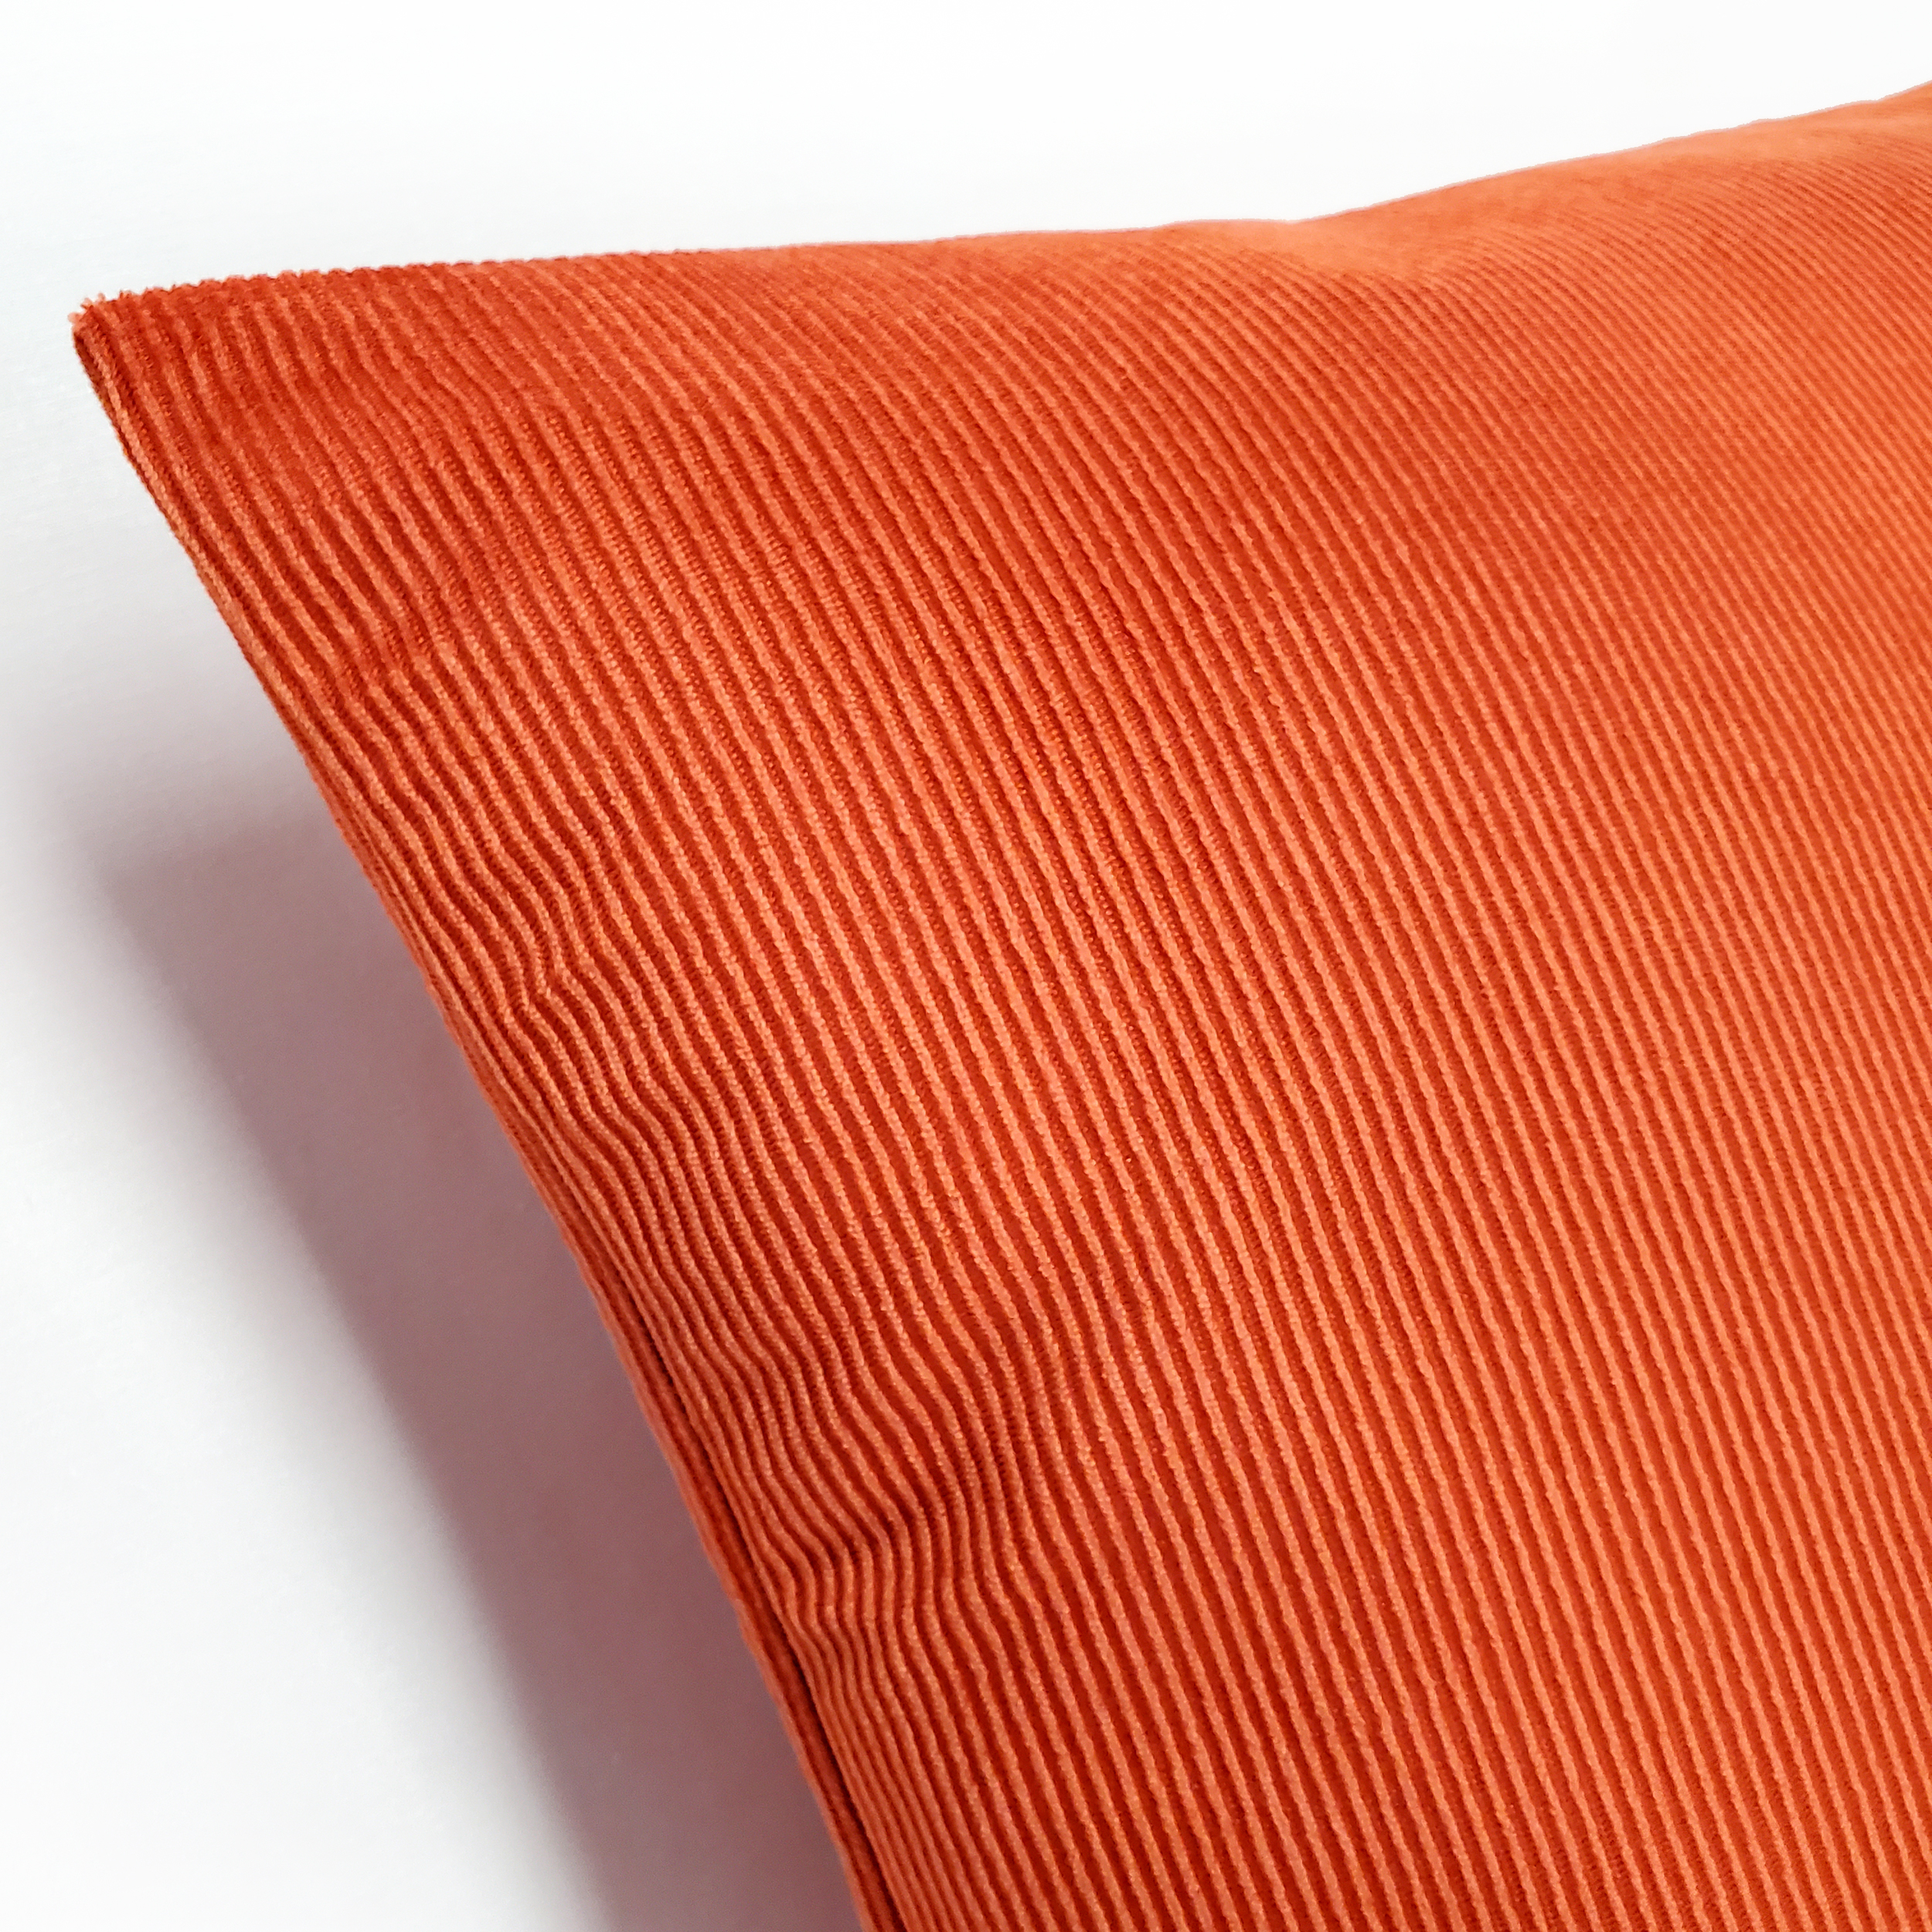 Liminal Koi Orange Striped Velvet Throw Pillow 19x19, With Polyfill Insert